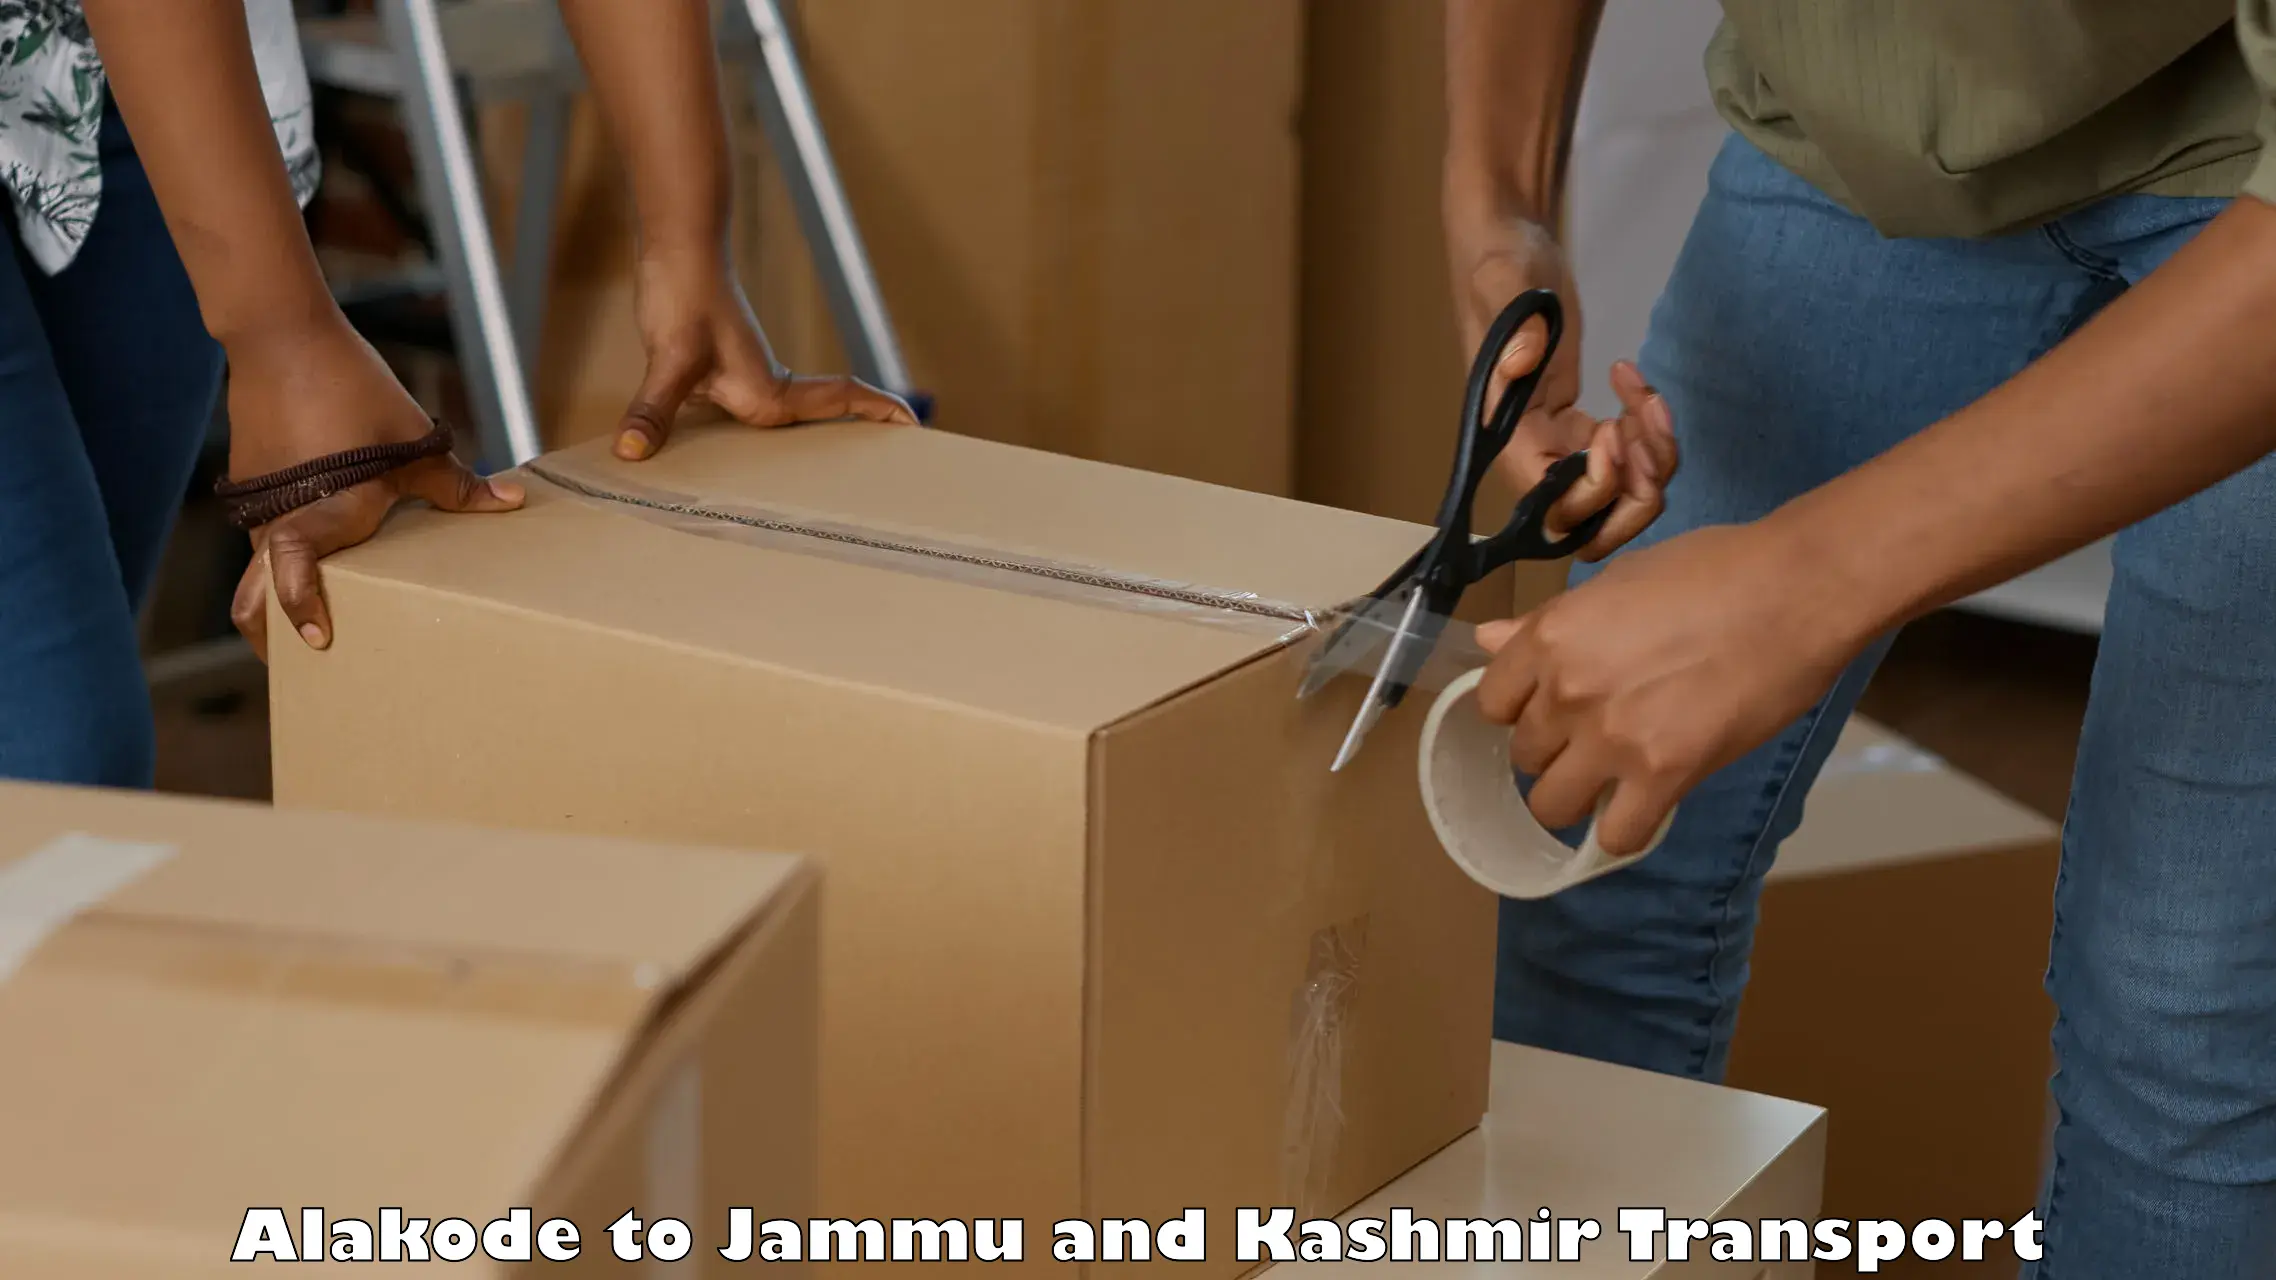 Air freight transport services Alakode to Jammu and Kashmir